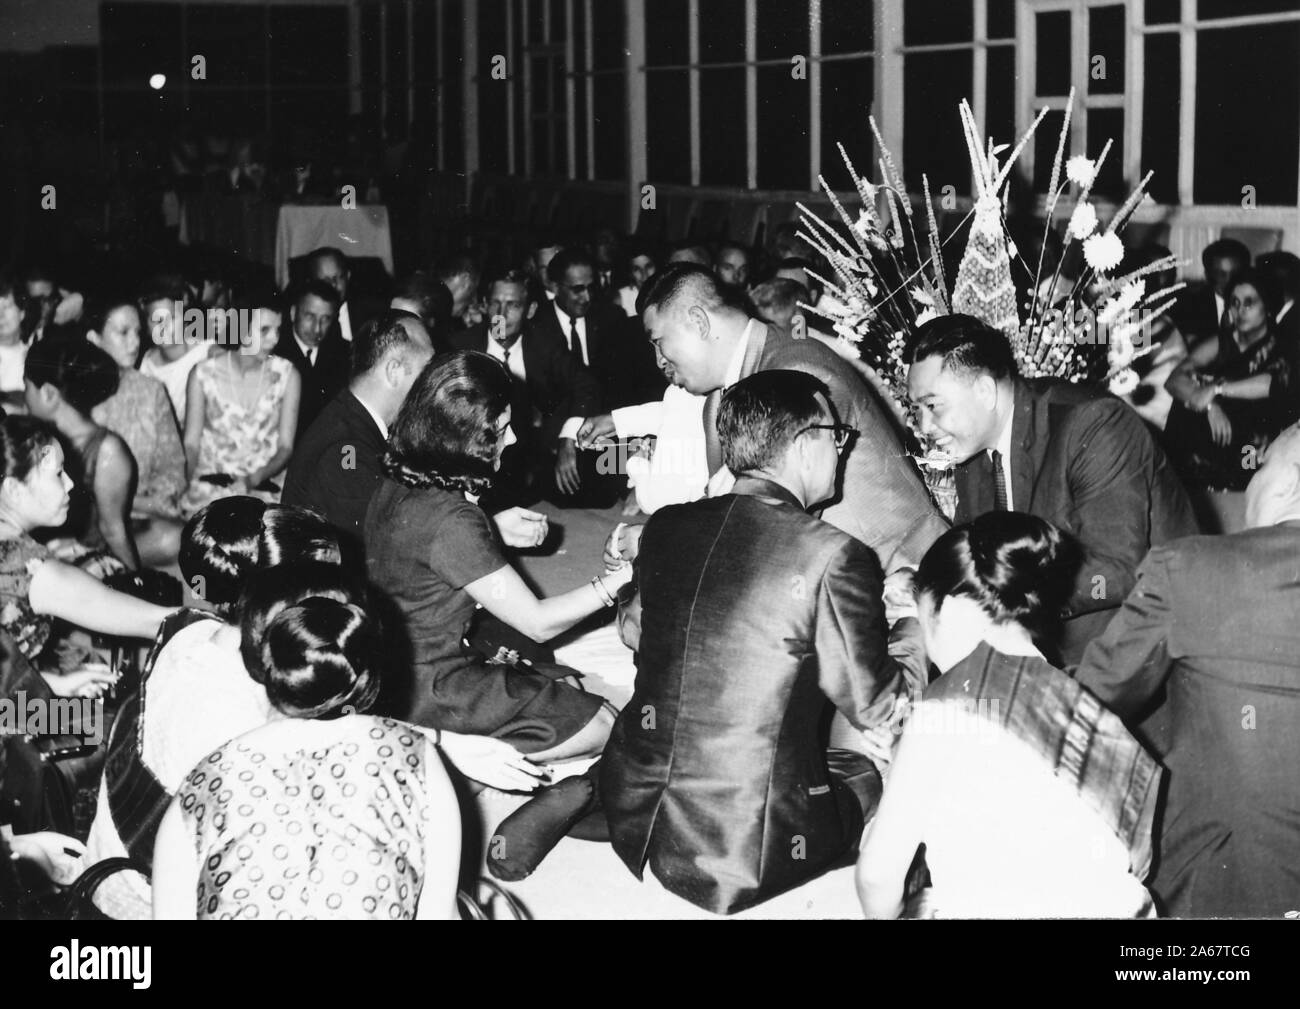 Un groupe d'hommes et de femmes habillés formellement s'assoit sur le sol, certains recevant des bracelets Sai Sin, lors d'une cérémonie Baci à une fonction conjointe de l'armée américaine et de l'armée royale thaïlandaise, photographiée pendant la guerre du Vietnam, 1968. () Banque D'Images